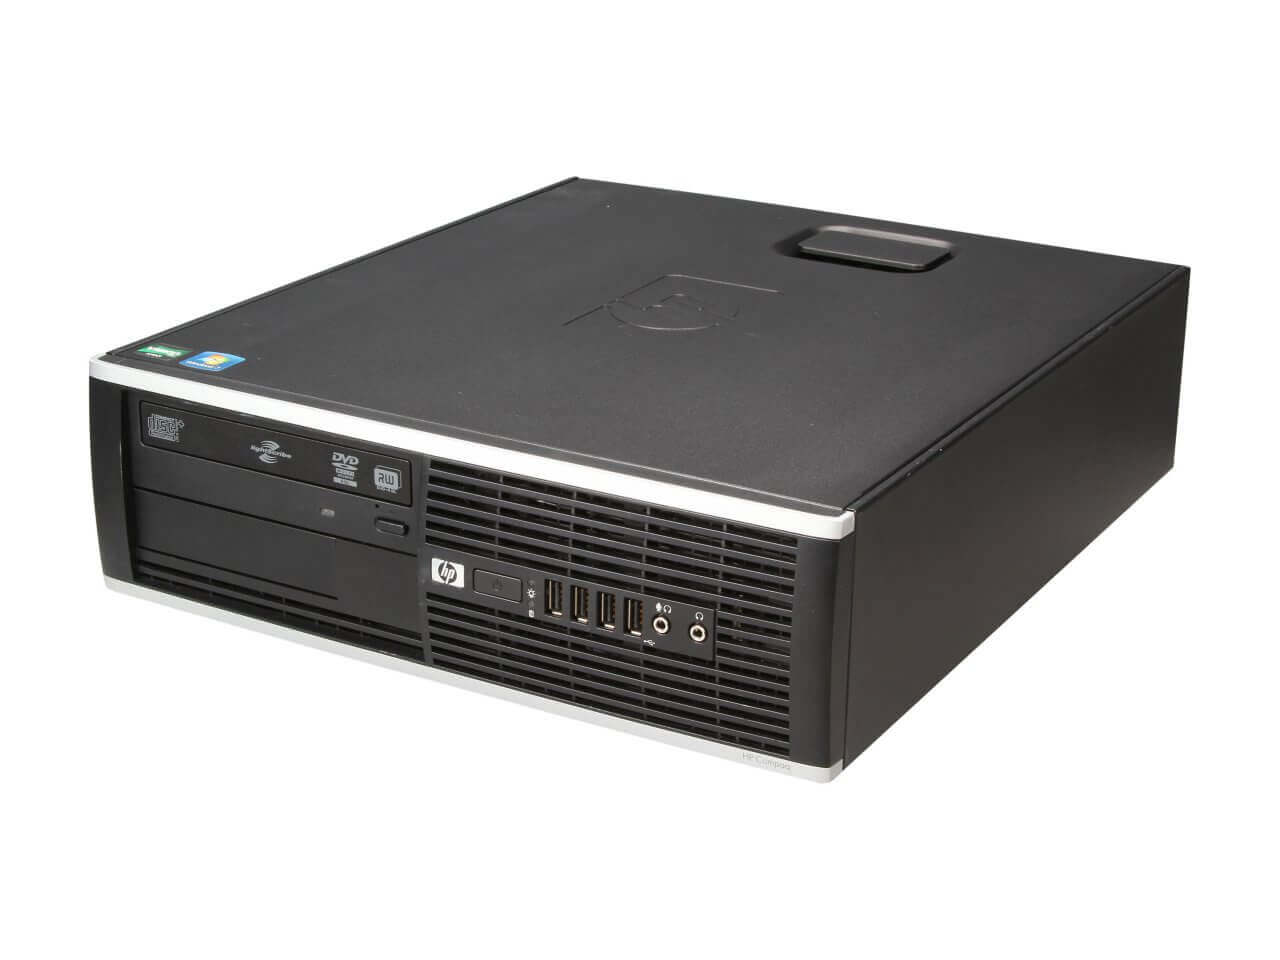 HP COMPAQ PRO 6005 SFF AMD ATHLON II X2 B28 3.4 / 4096 MB DDR3 / 500 GB / DVD-RW / NO COA